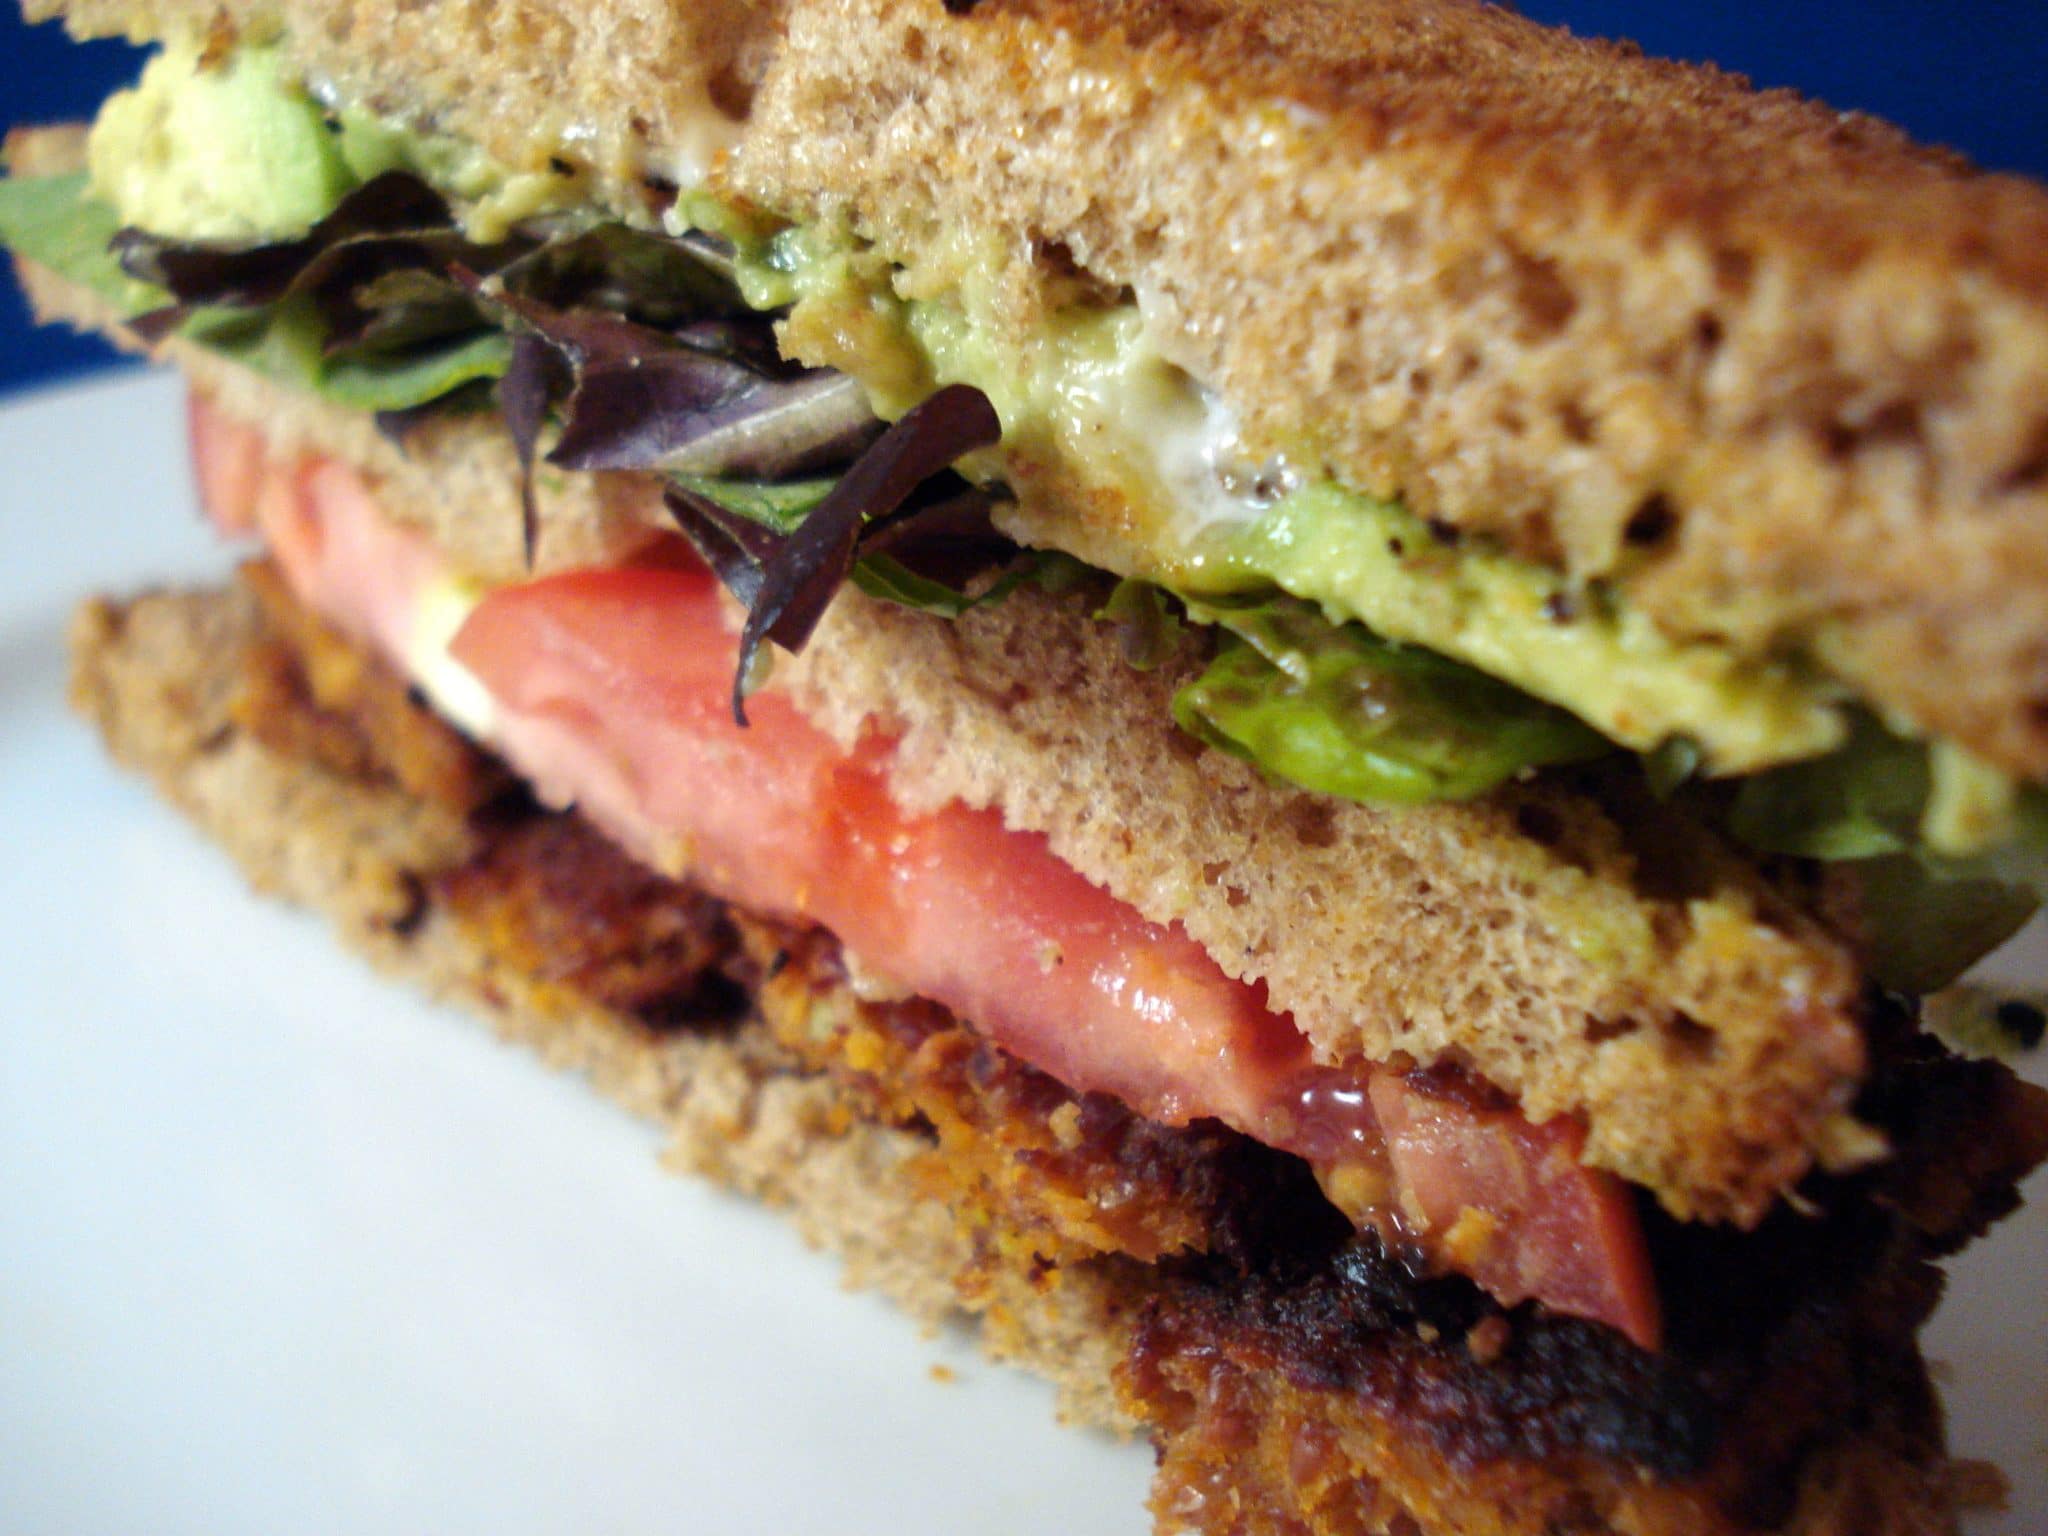 Vegan Back, Lettuce and Tomato sandwich - BLT